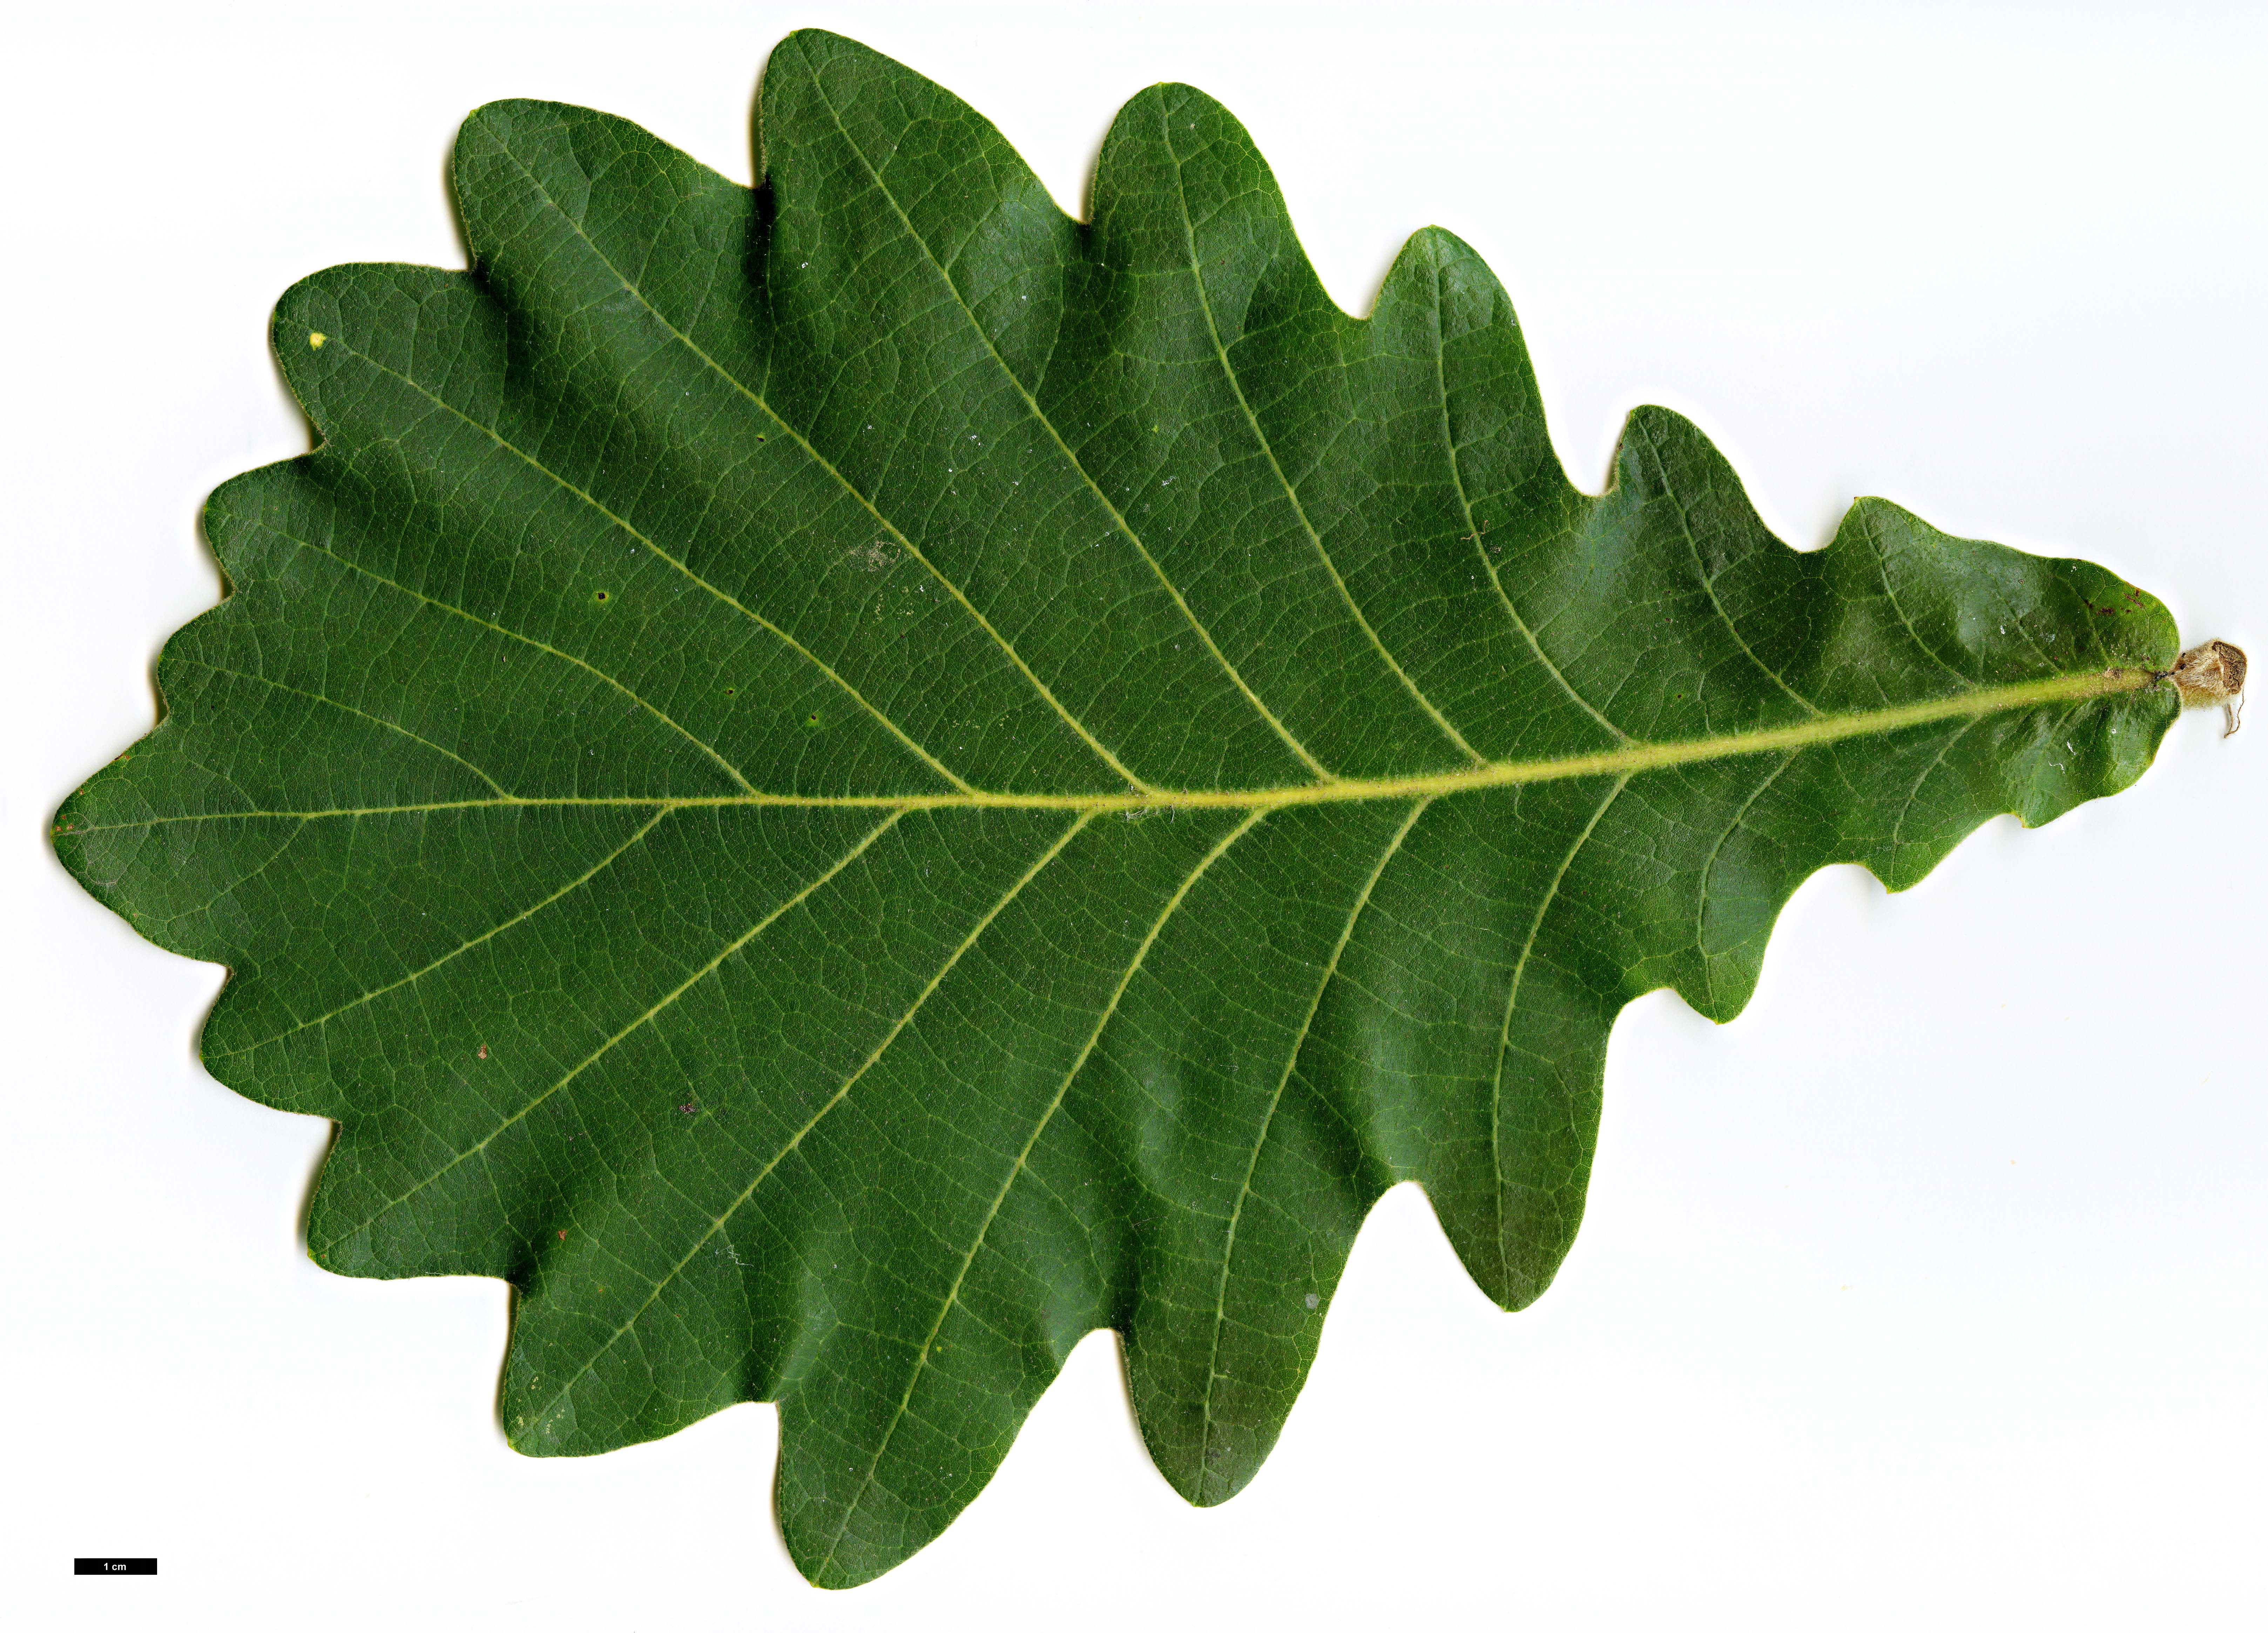 High resolution image: Family: Fagaceae - Genus: Quercus - Taxon: dentata